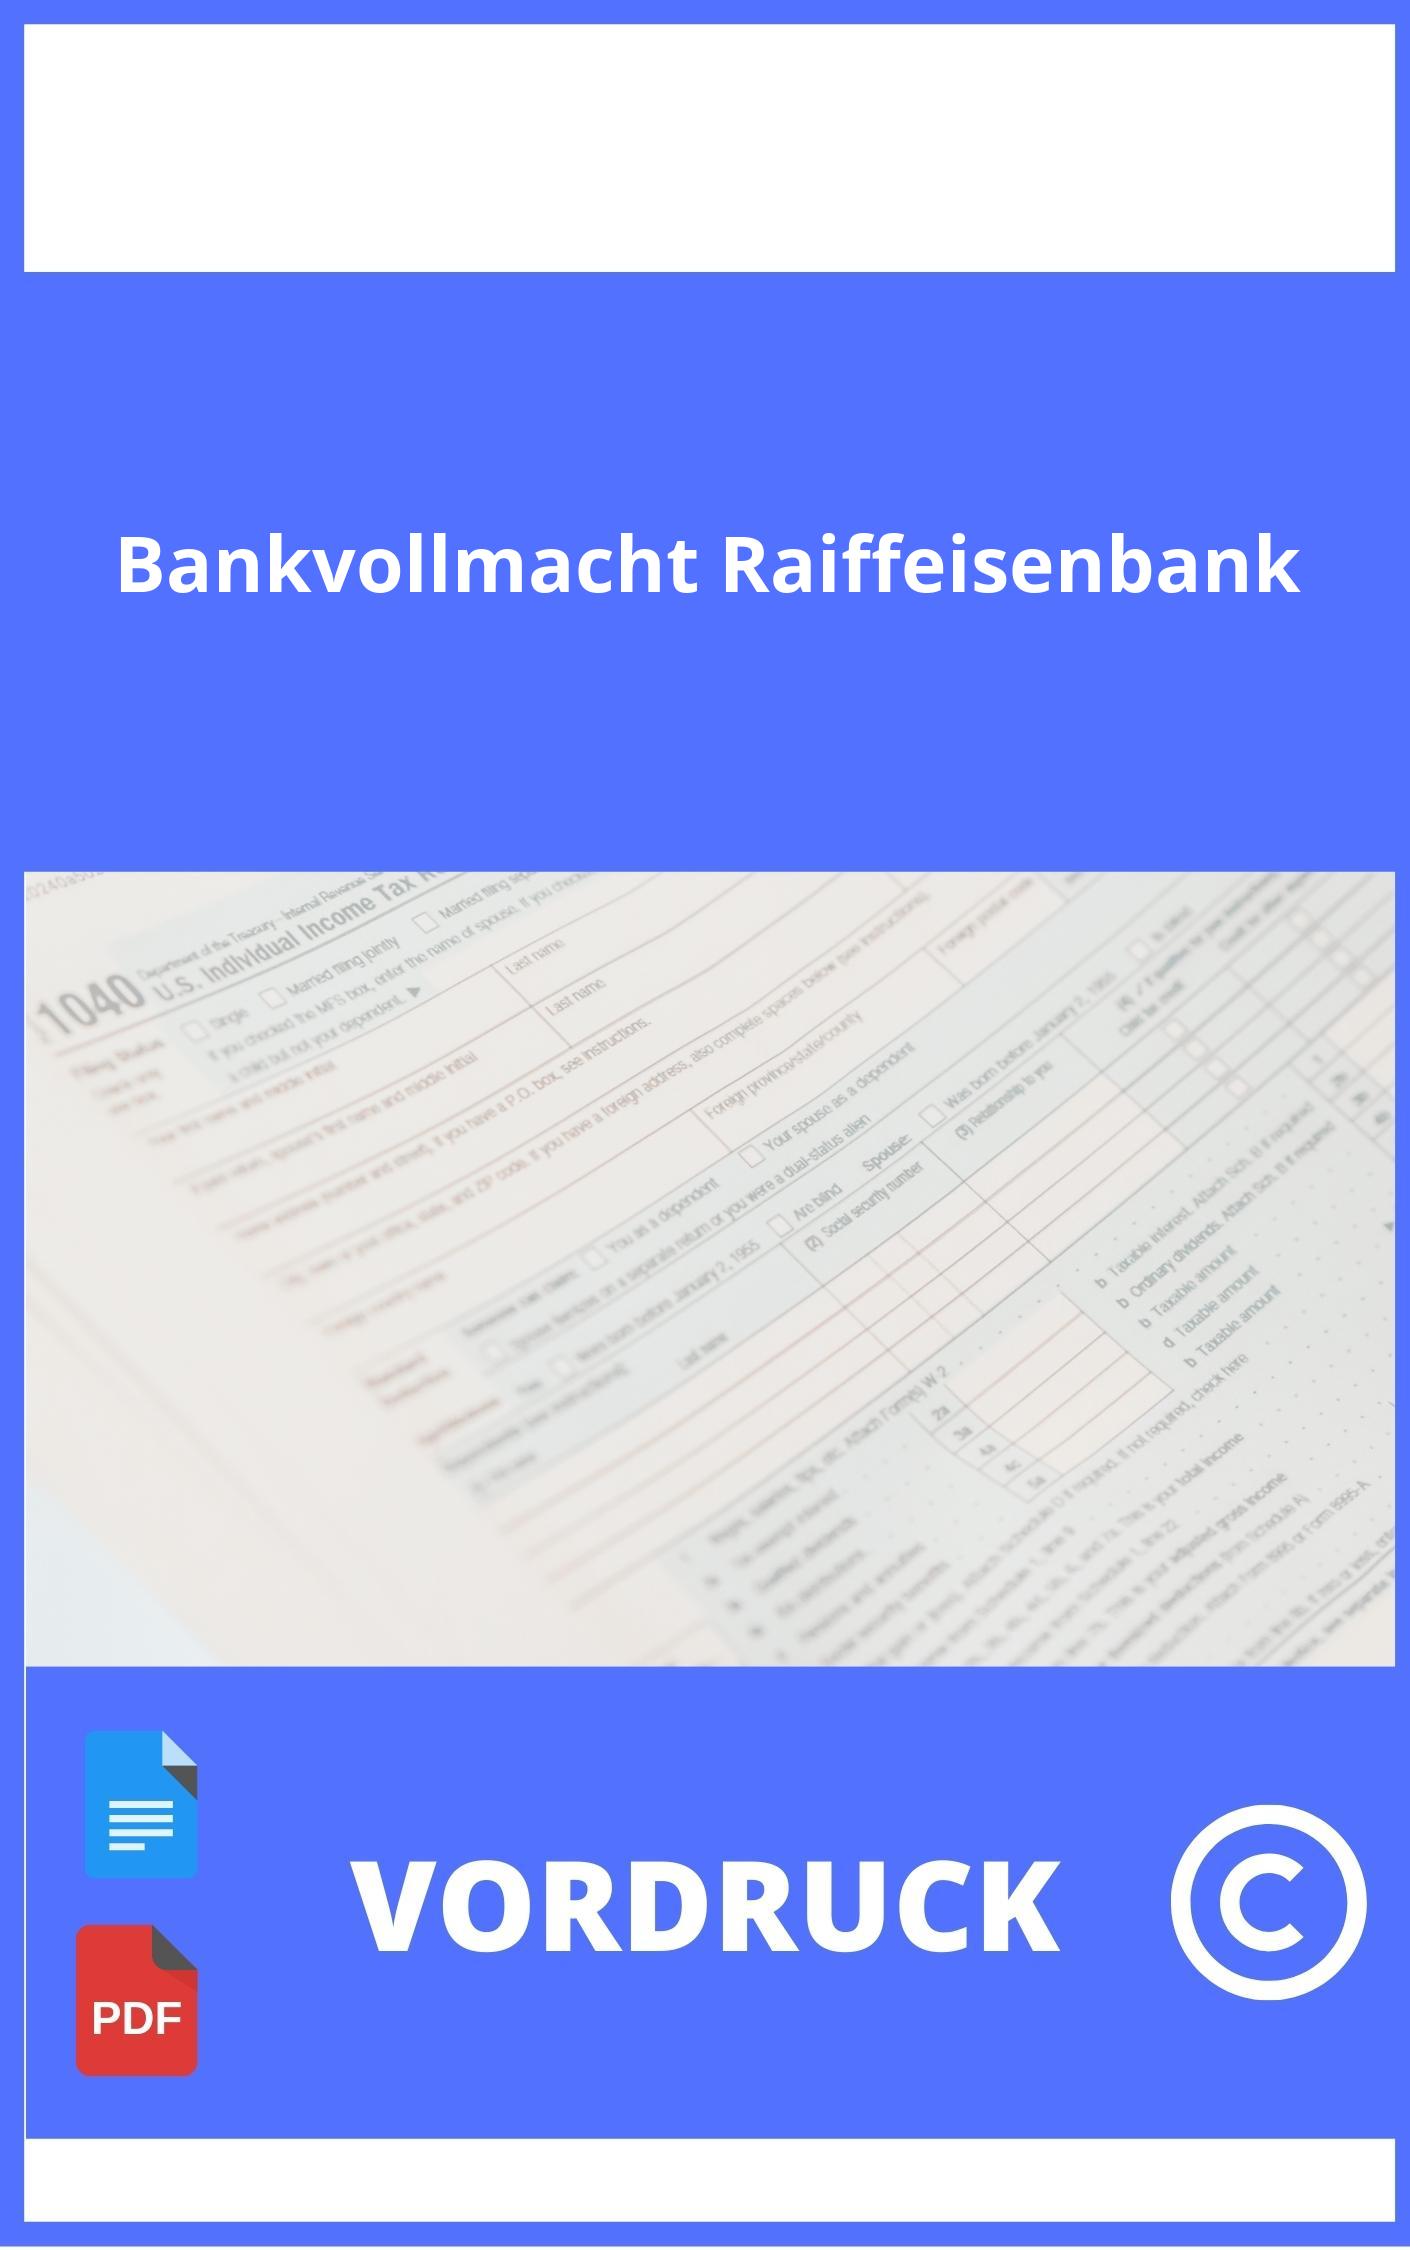 Vordruck Bankvollmacht Raiffeisenbank